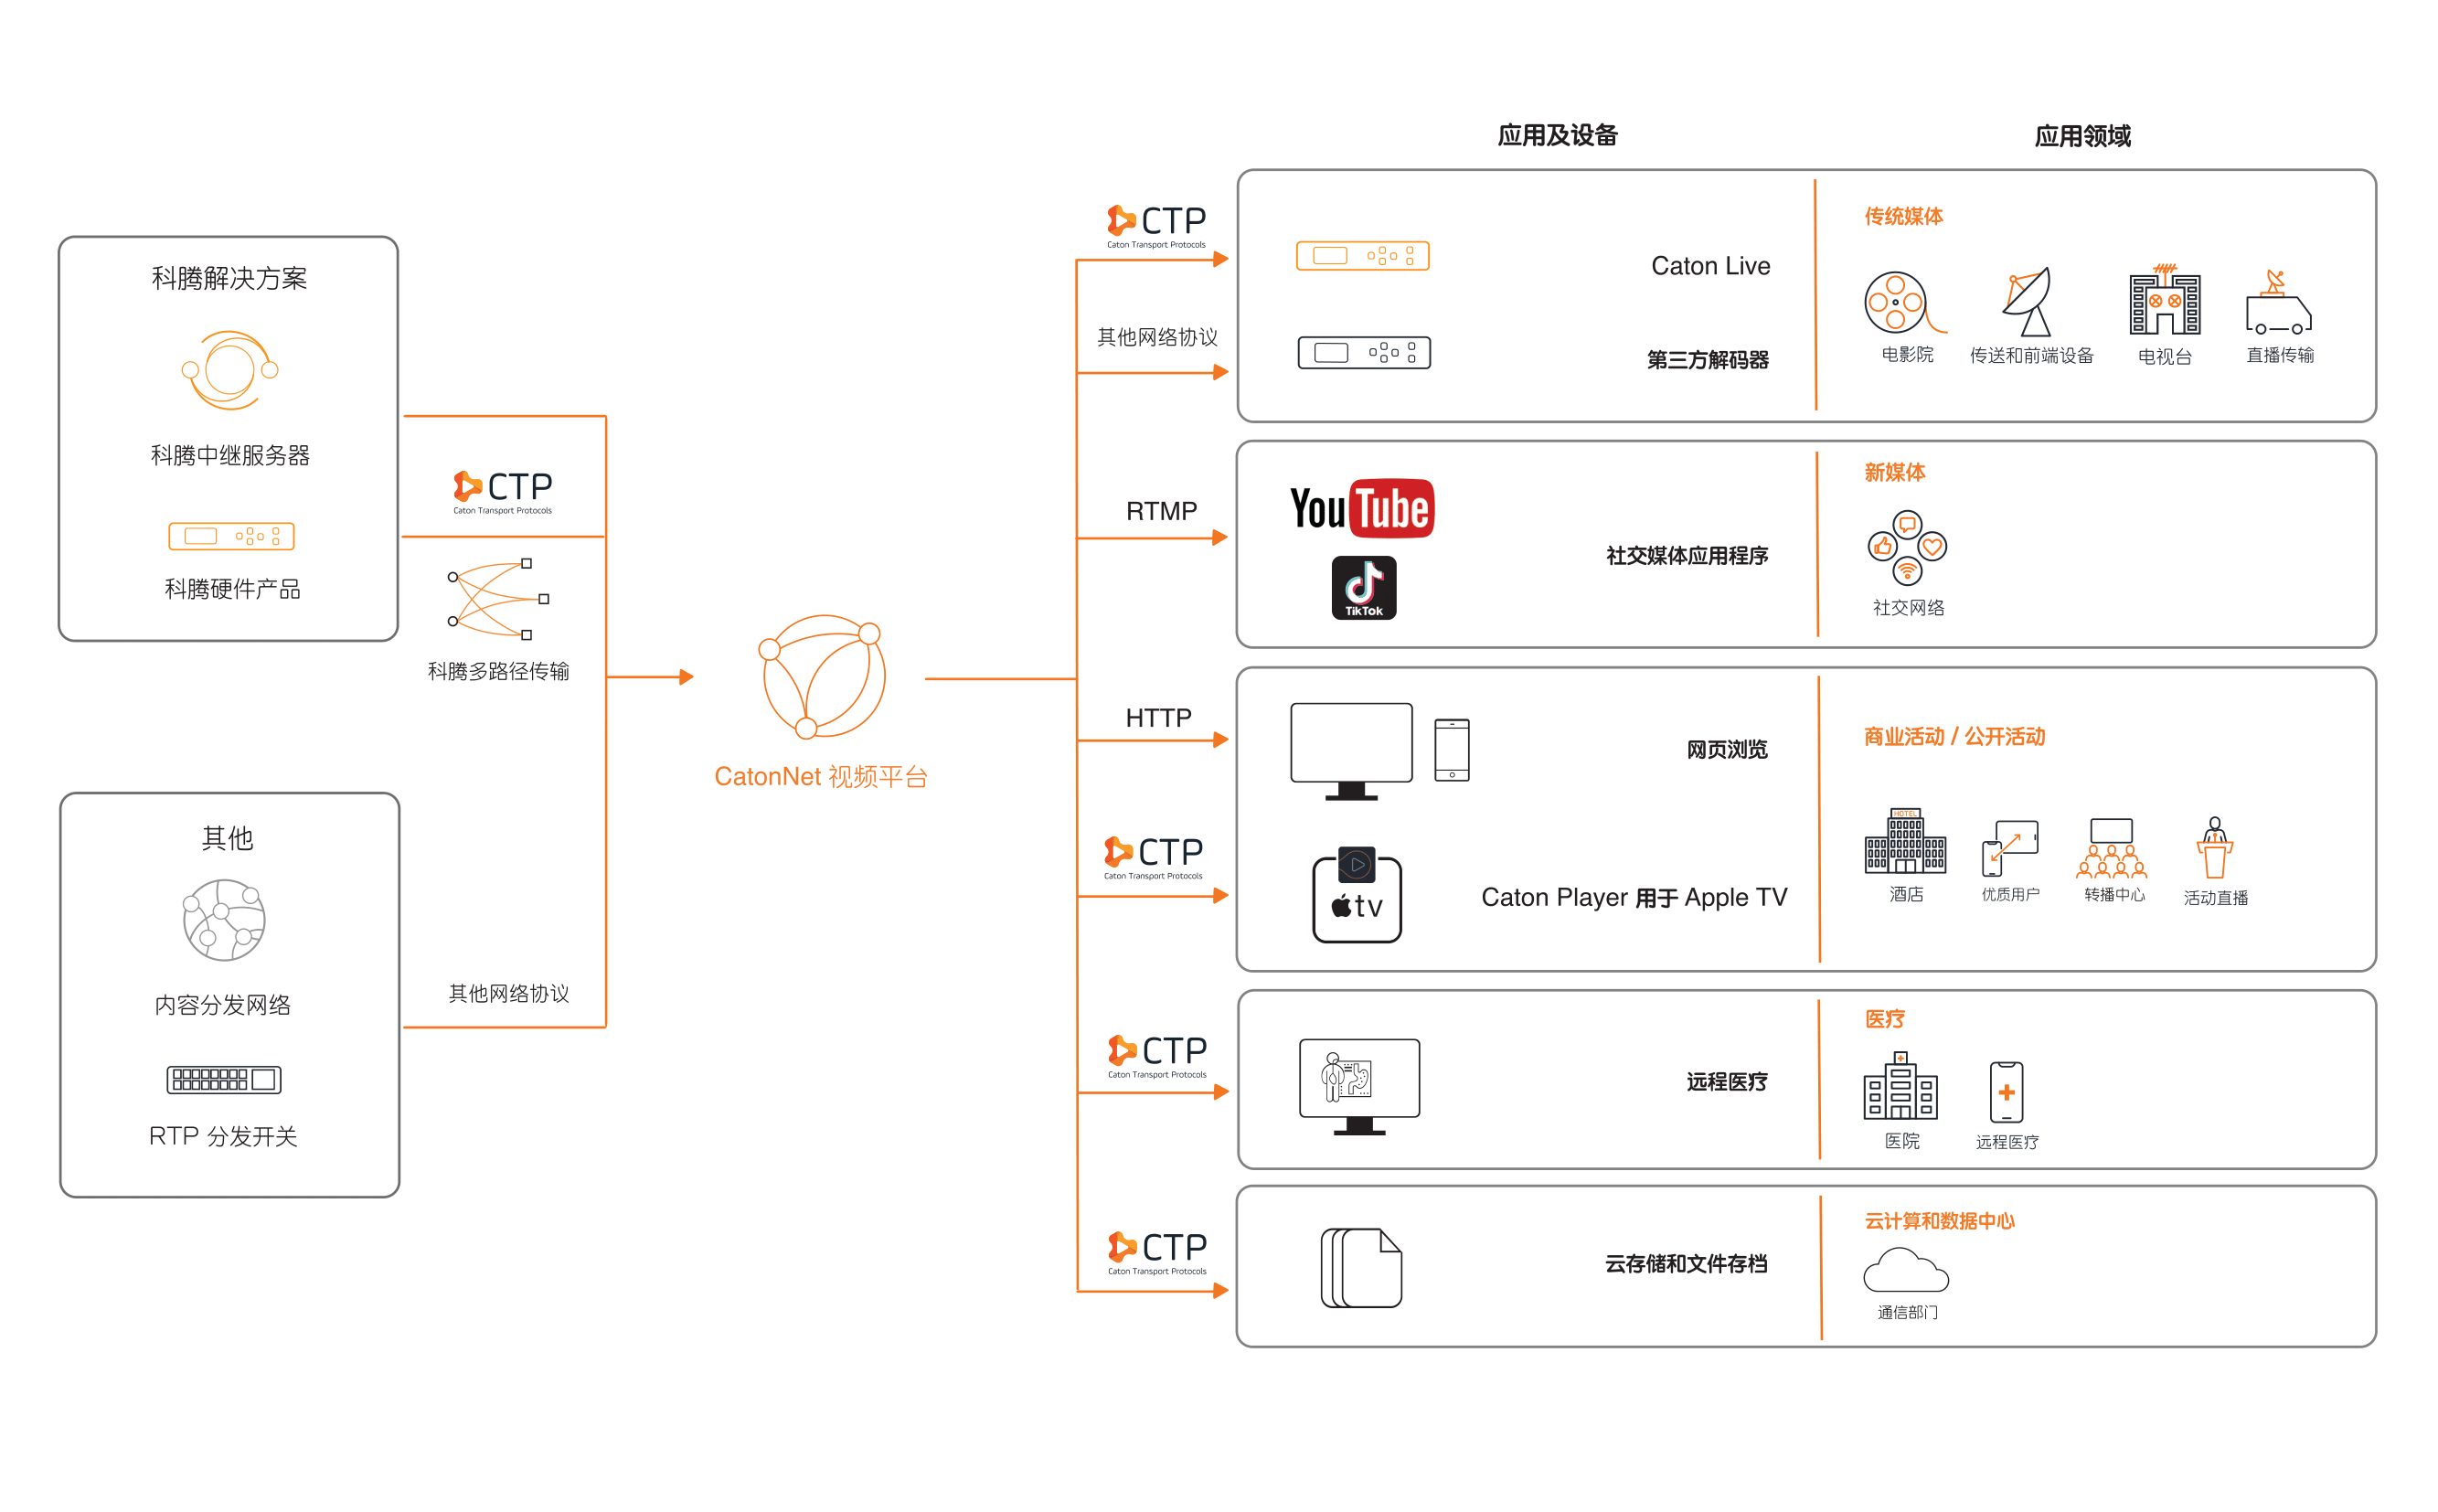 CatonNet Video Platform (CVP) Workflow Diagram - ZH